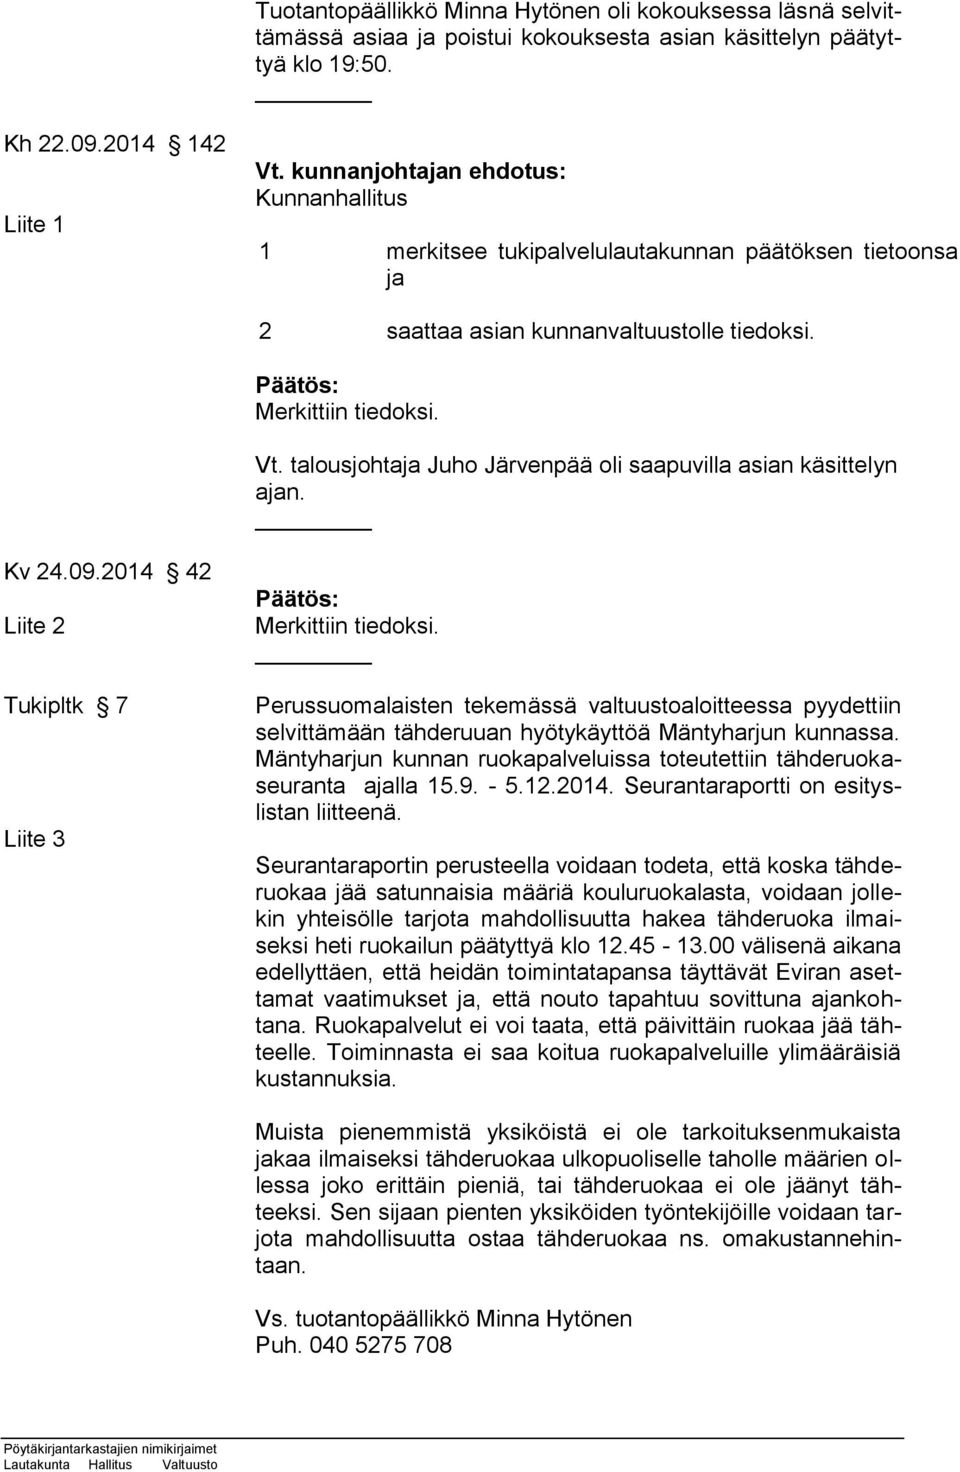 talousjohtaja Juho Järvenpää oli saapuvilla asian käsittelyn ajan. Kv 24.09.2014 42 Liite 2 Tukipltk 7 Liite 3 Merkittiin tiedoksi.